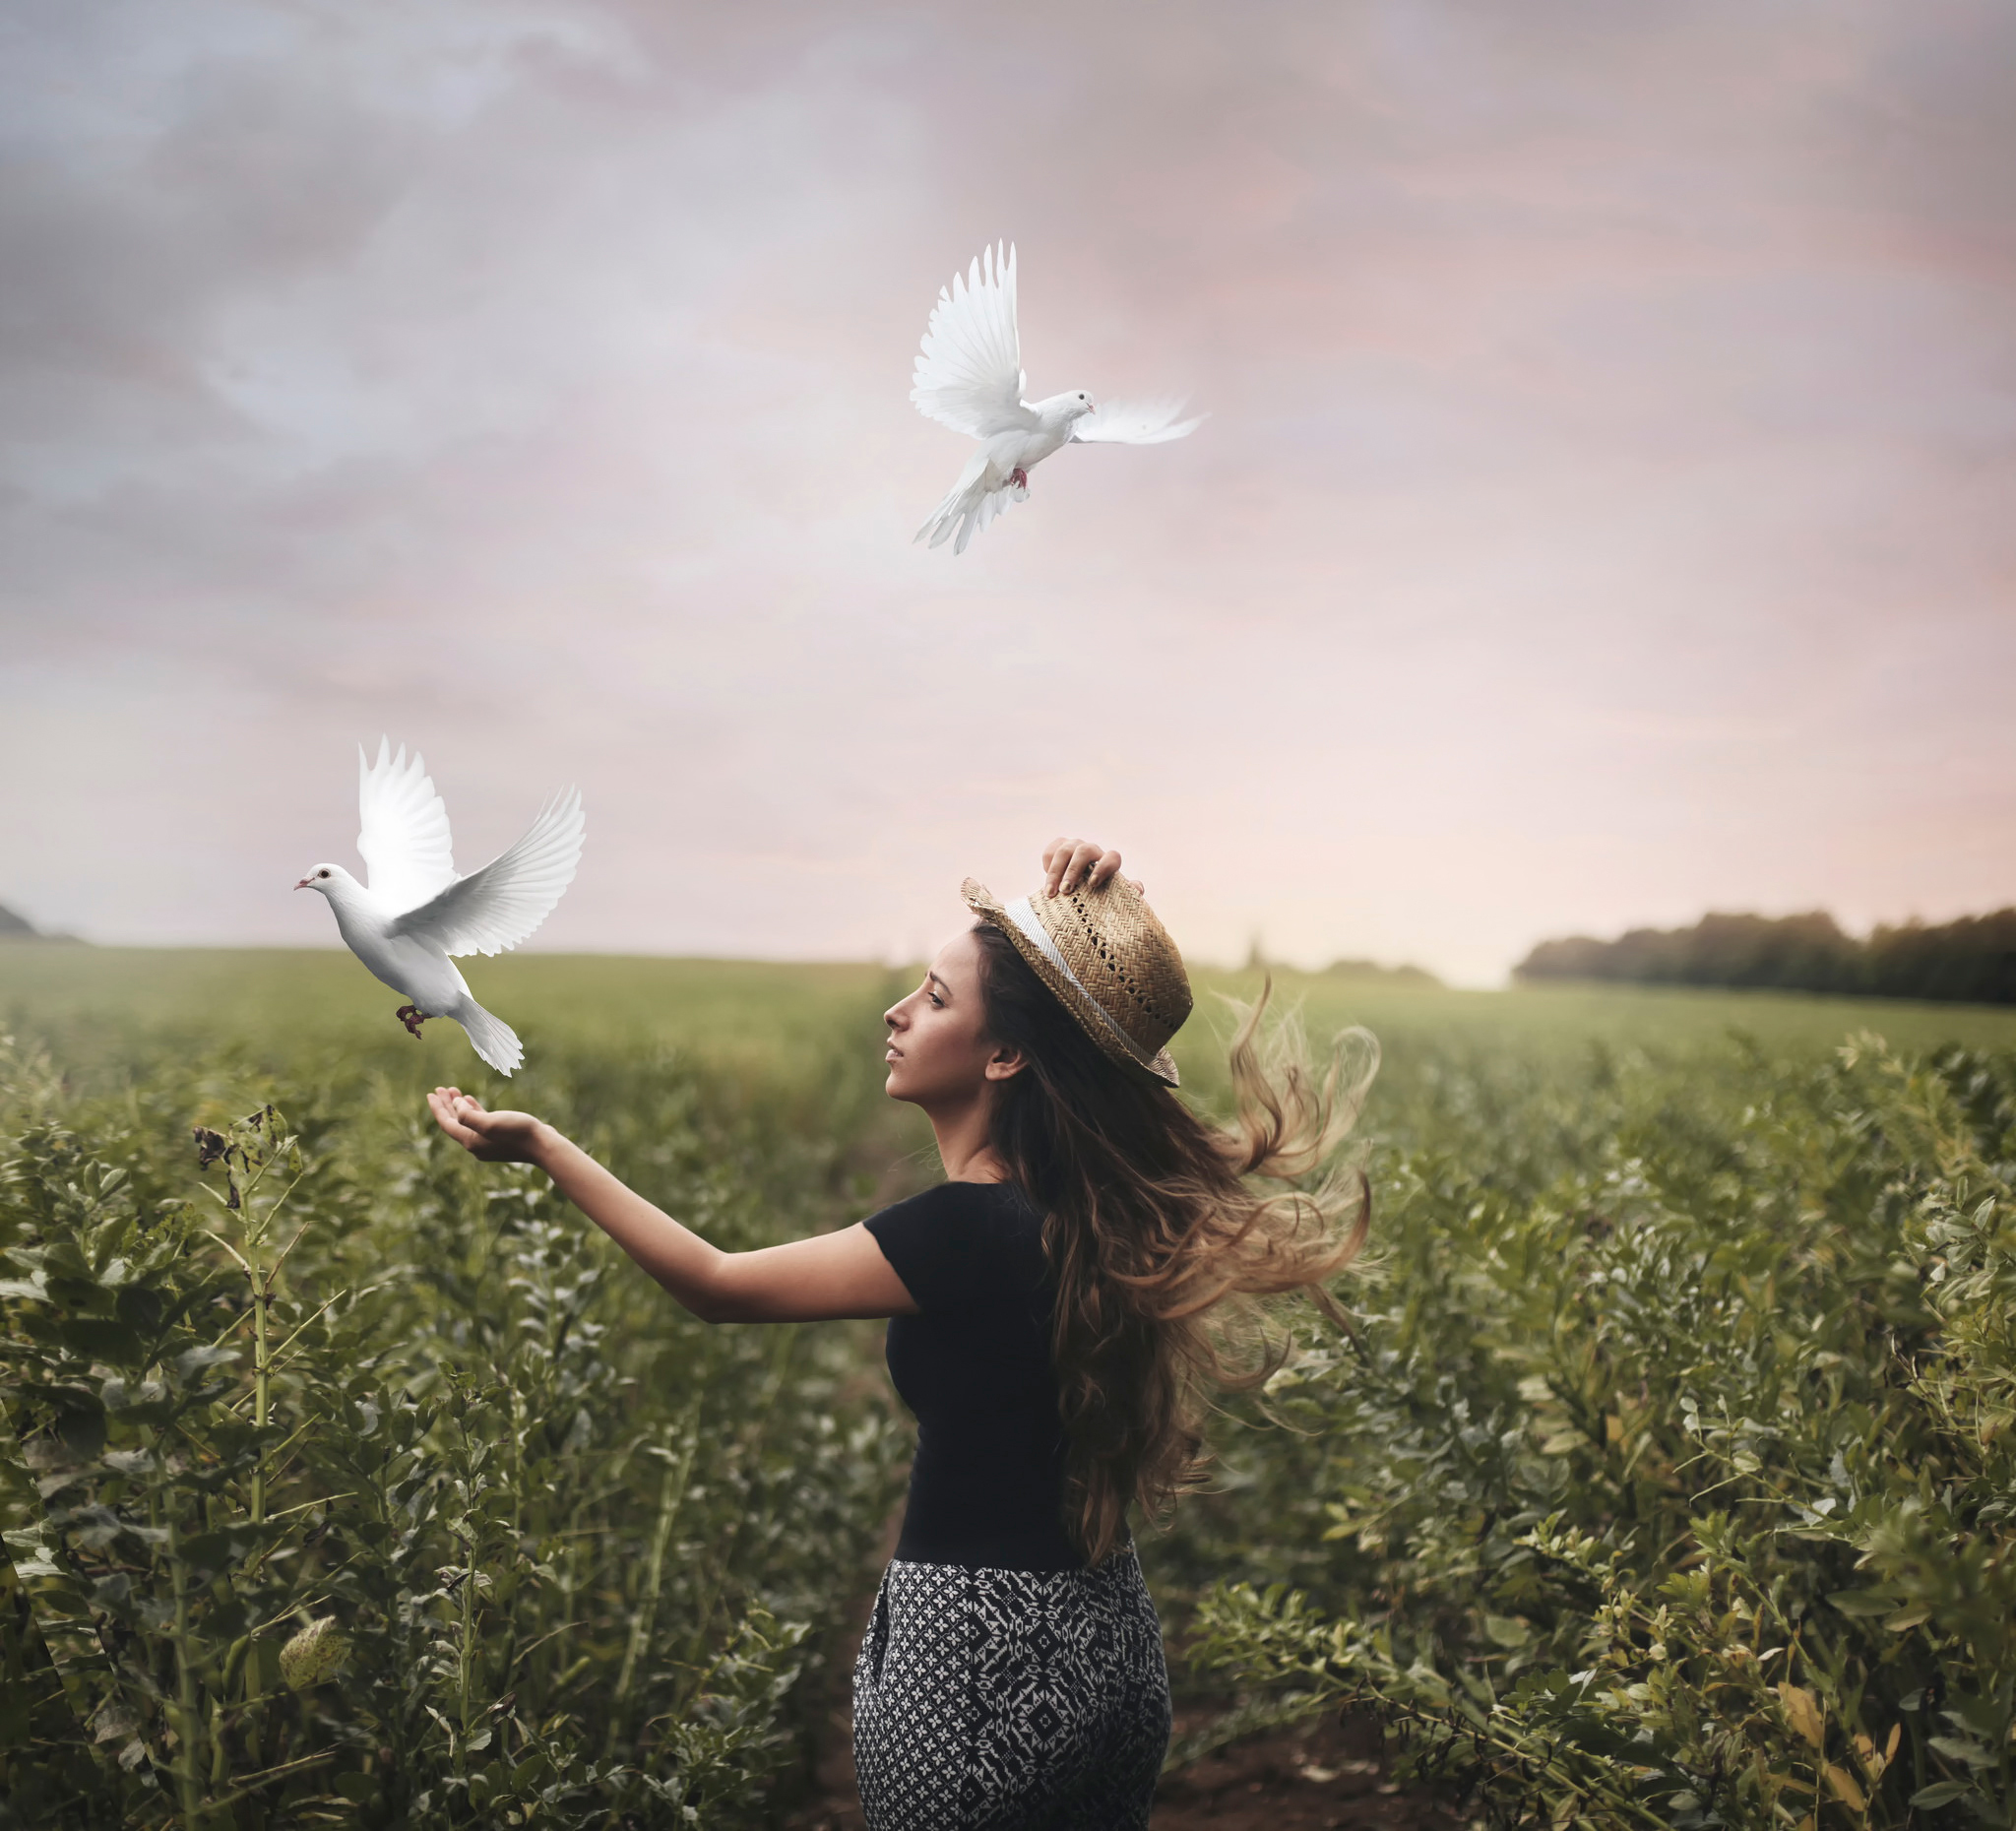 Крае быть свободным. Птица свободы. Девушка выпускает птицу. Человек птица. Девушка с голубем в руках.